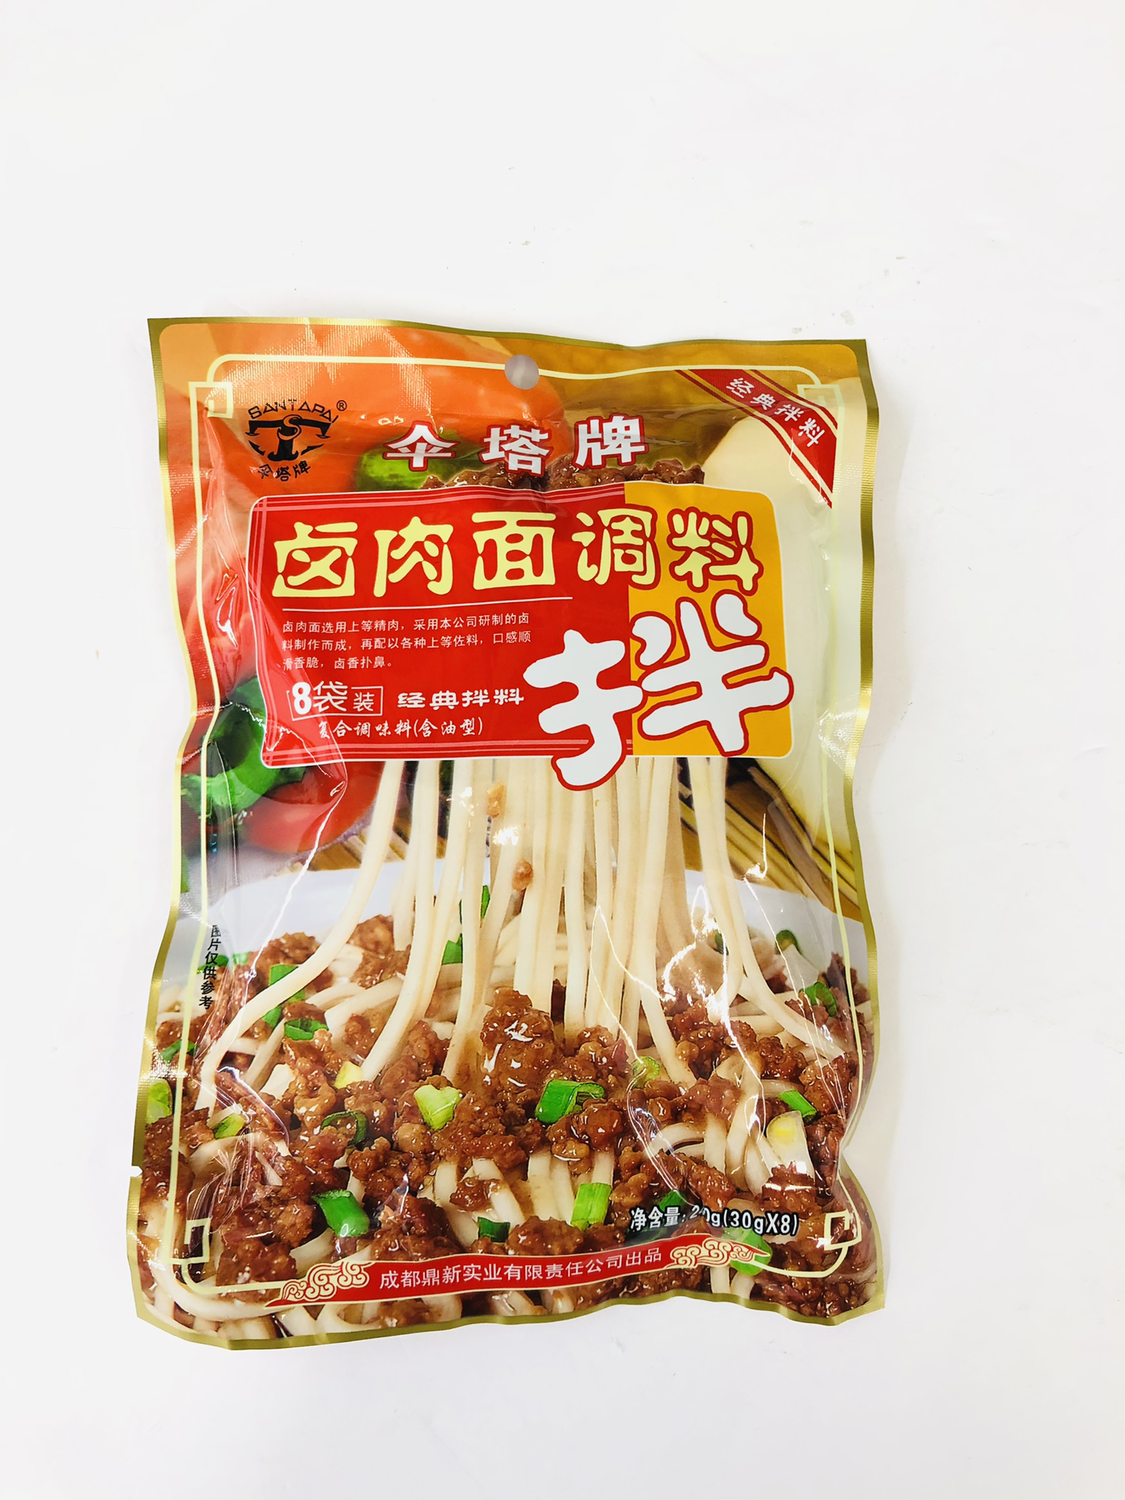 伞塔牌卤肉面调料(拌) SANTAPAI Noodle Sauce - Stewed Meat Flavour 240g(30X8)